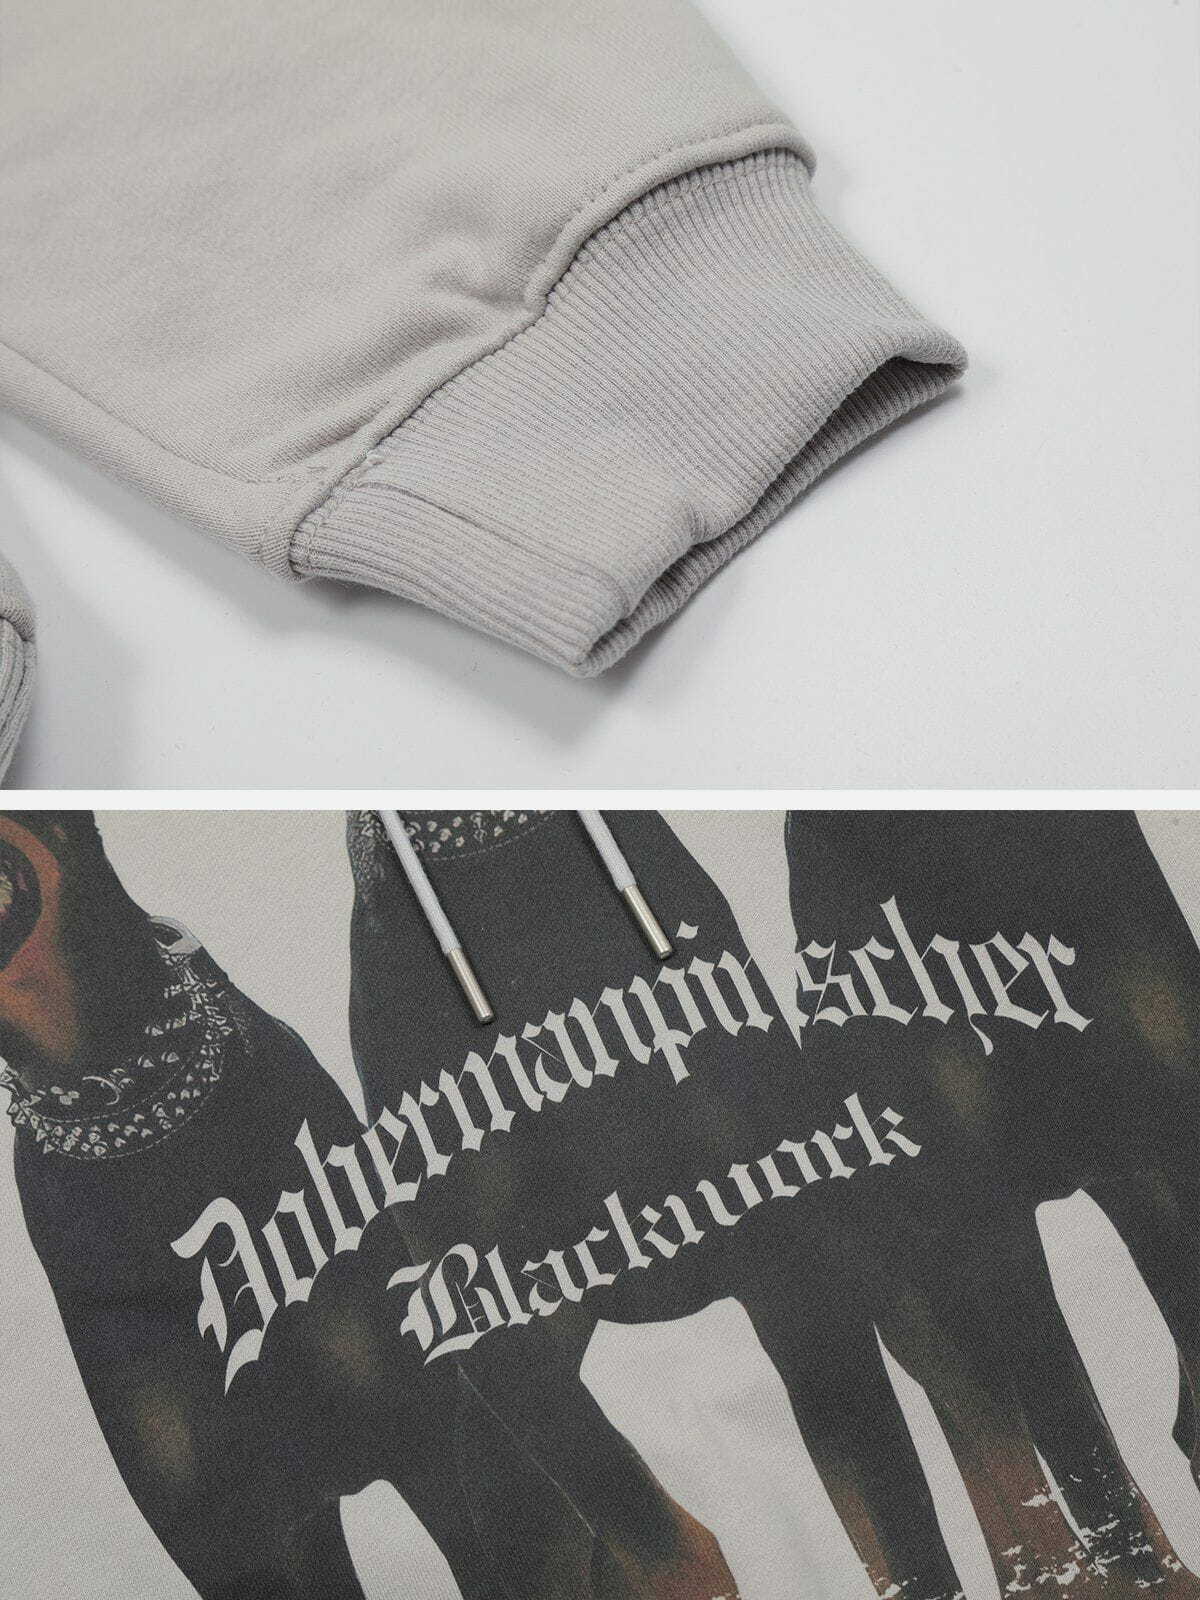 dynamic doberman print hoodie edgy streetwear 3251